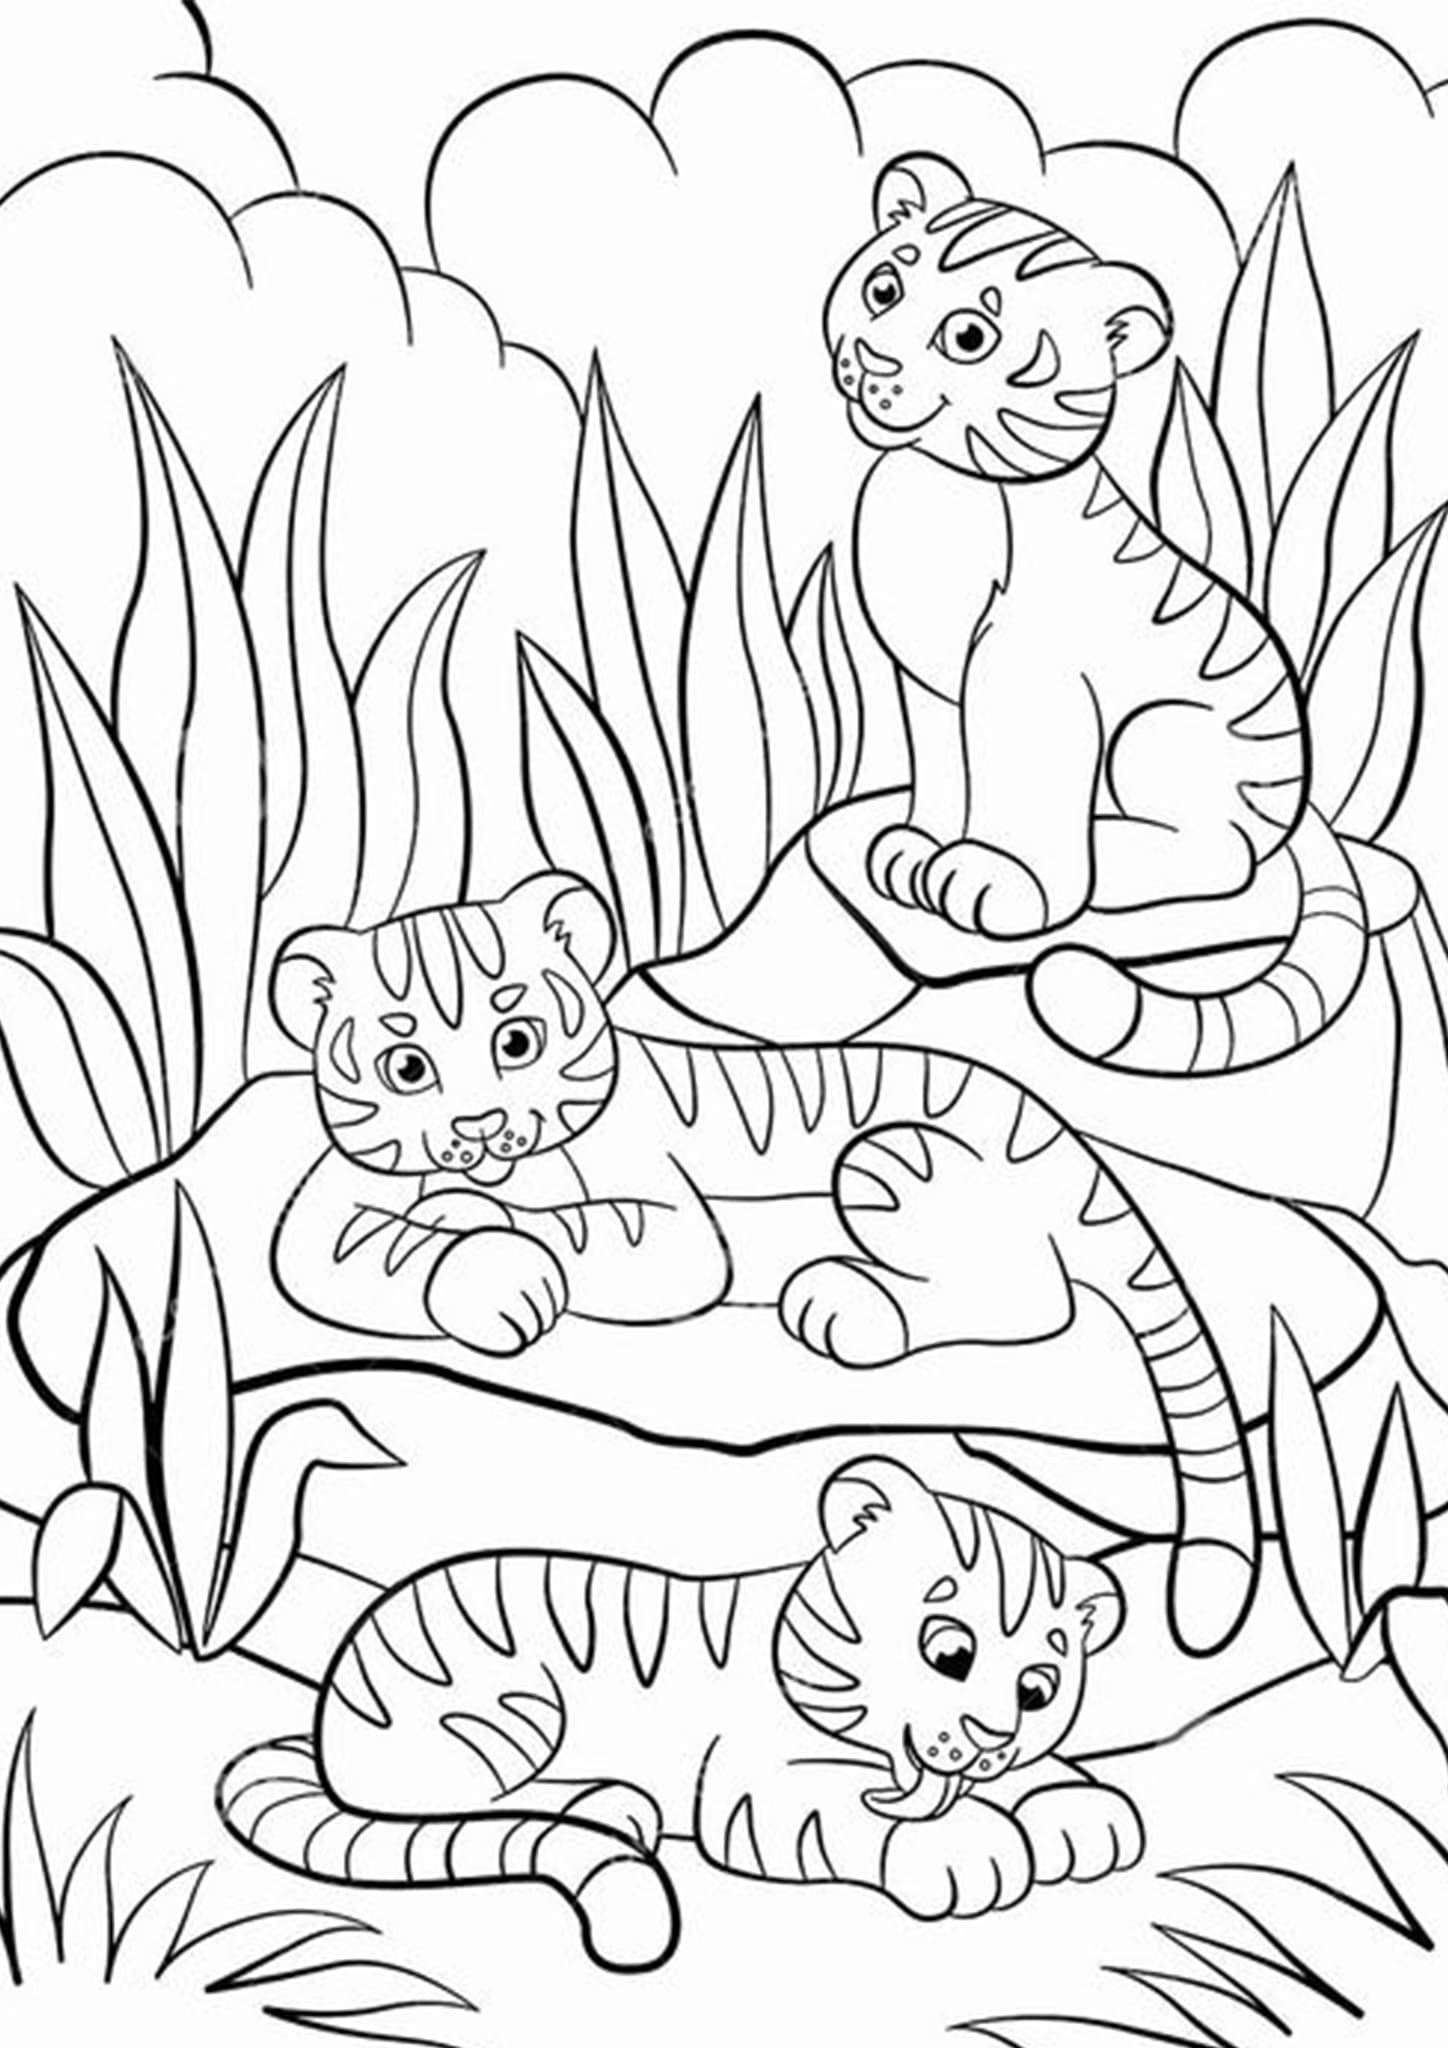 Семья тигров раскраска